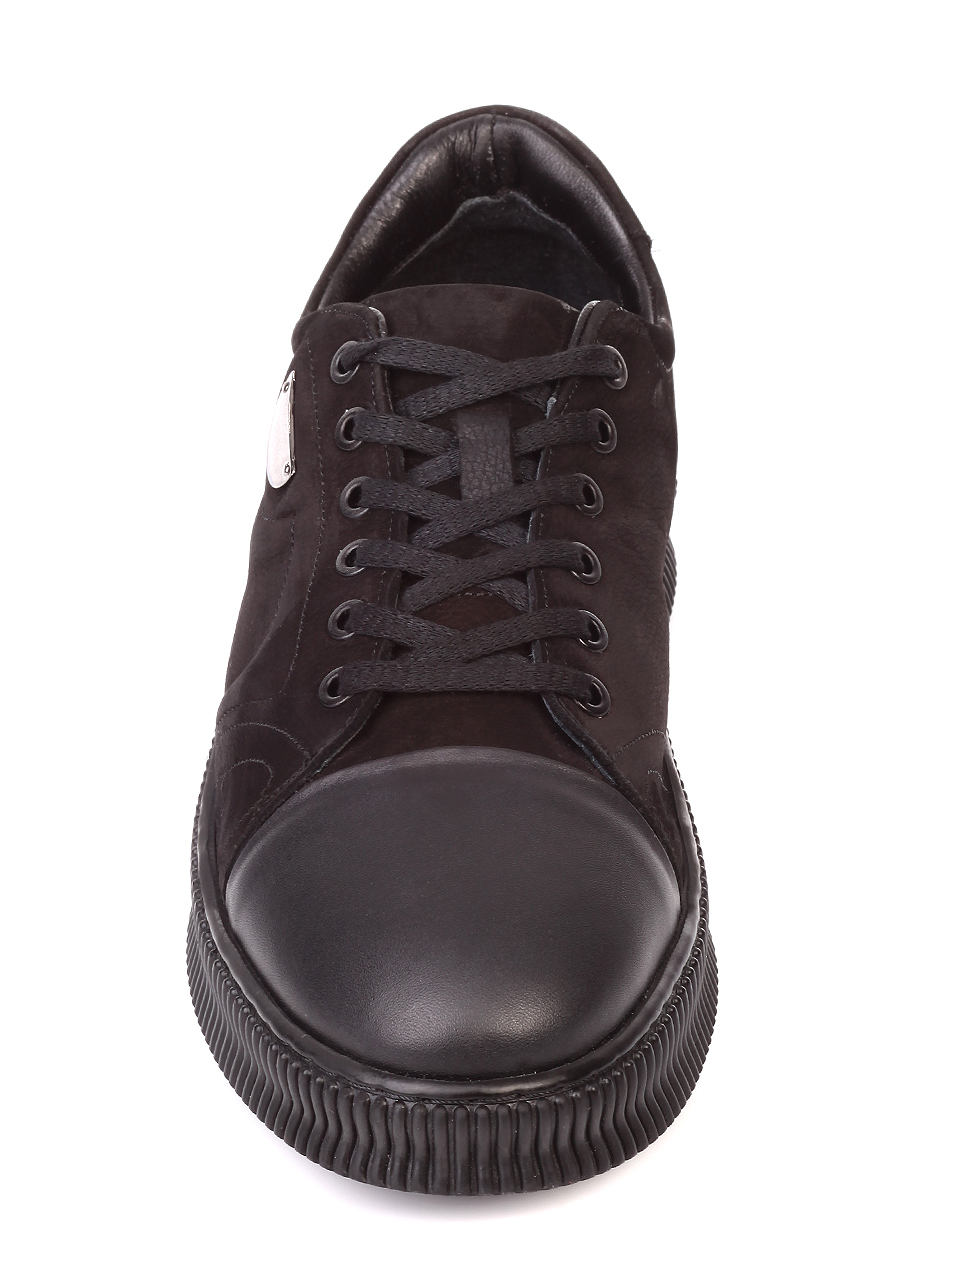 Ежедневни мъжки обувки от естествен набук и естествена кожа 7AT-19948 black